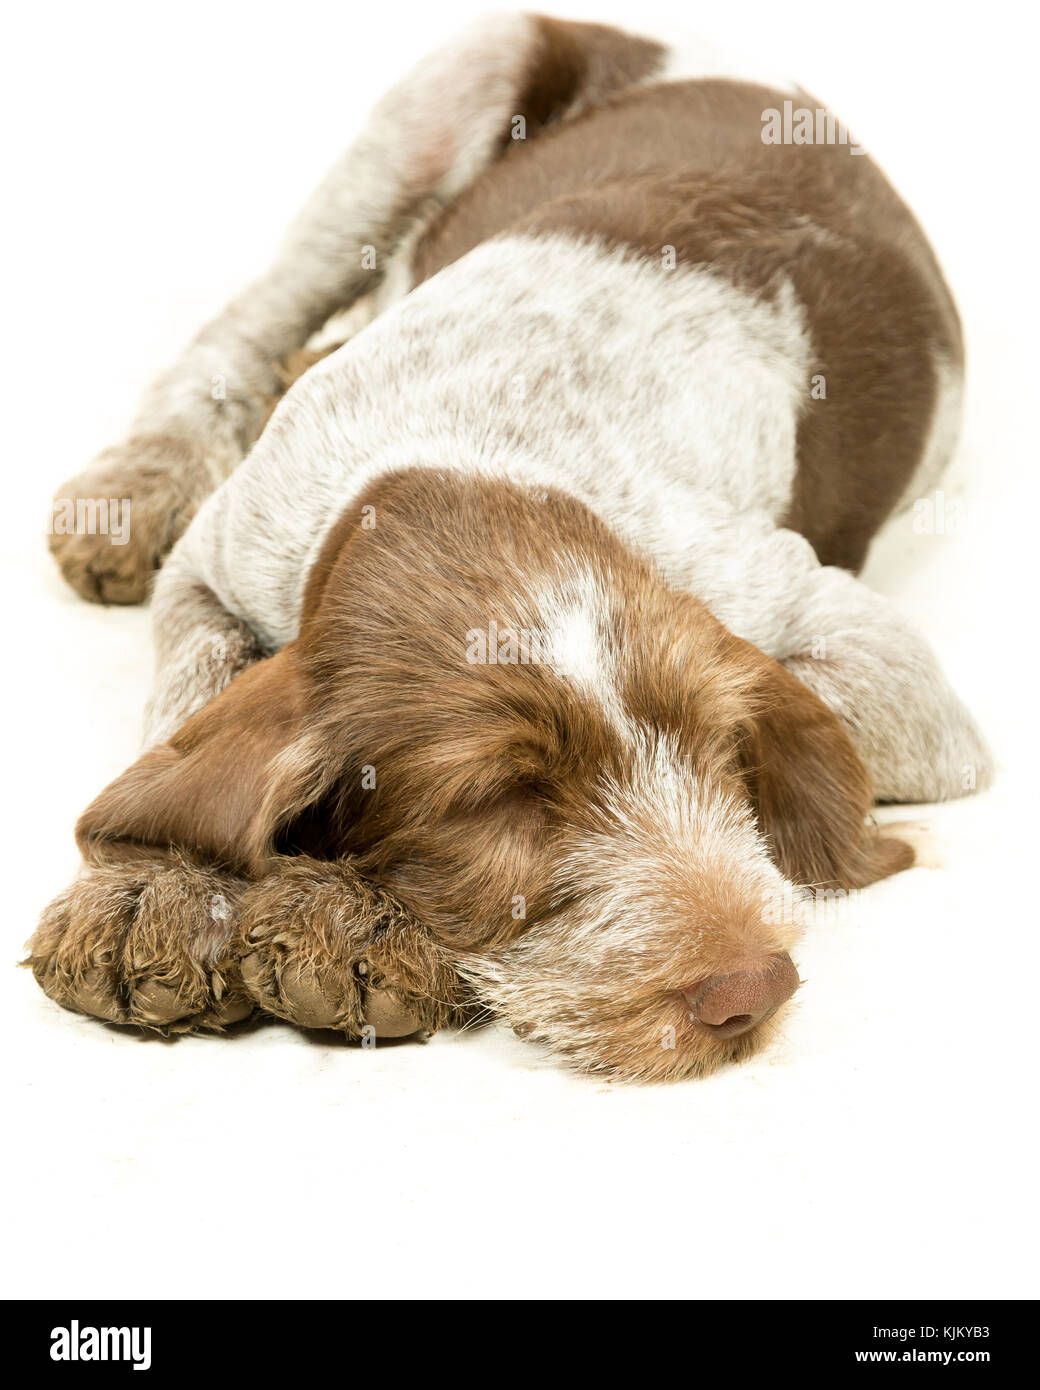 Italiano cucciolo spinone marrone e bianco su sfondo bianco Foto Stock